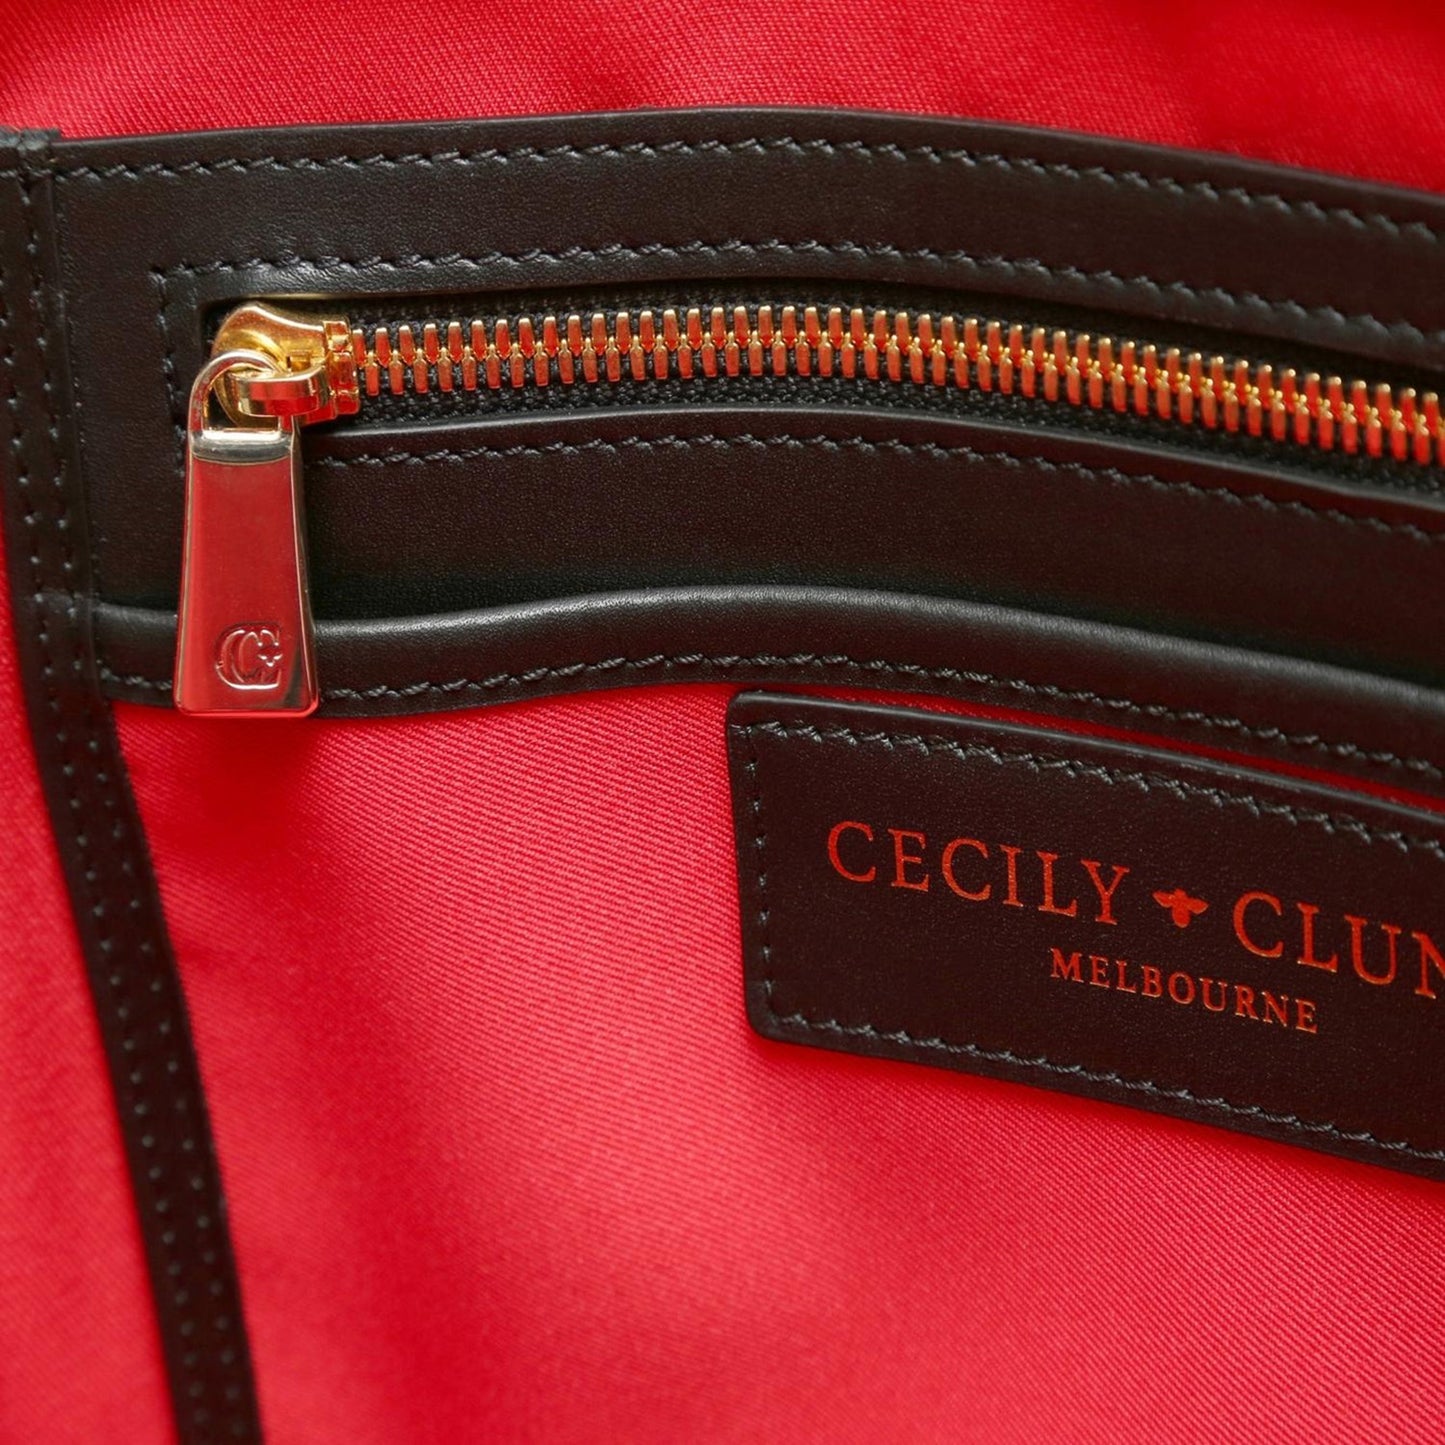 Paris End Bag-Cecily Clune